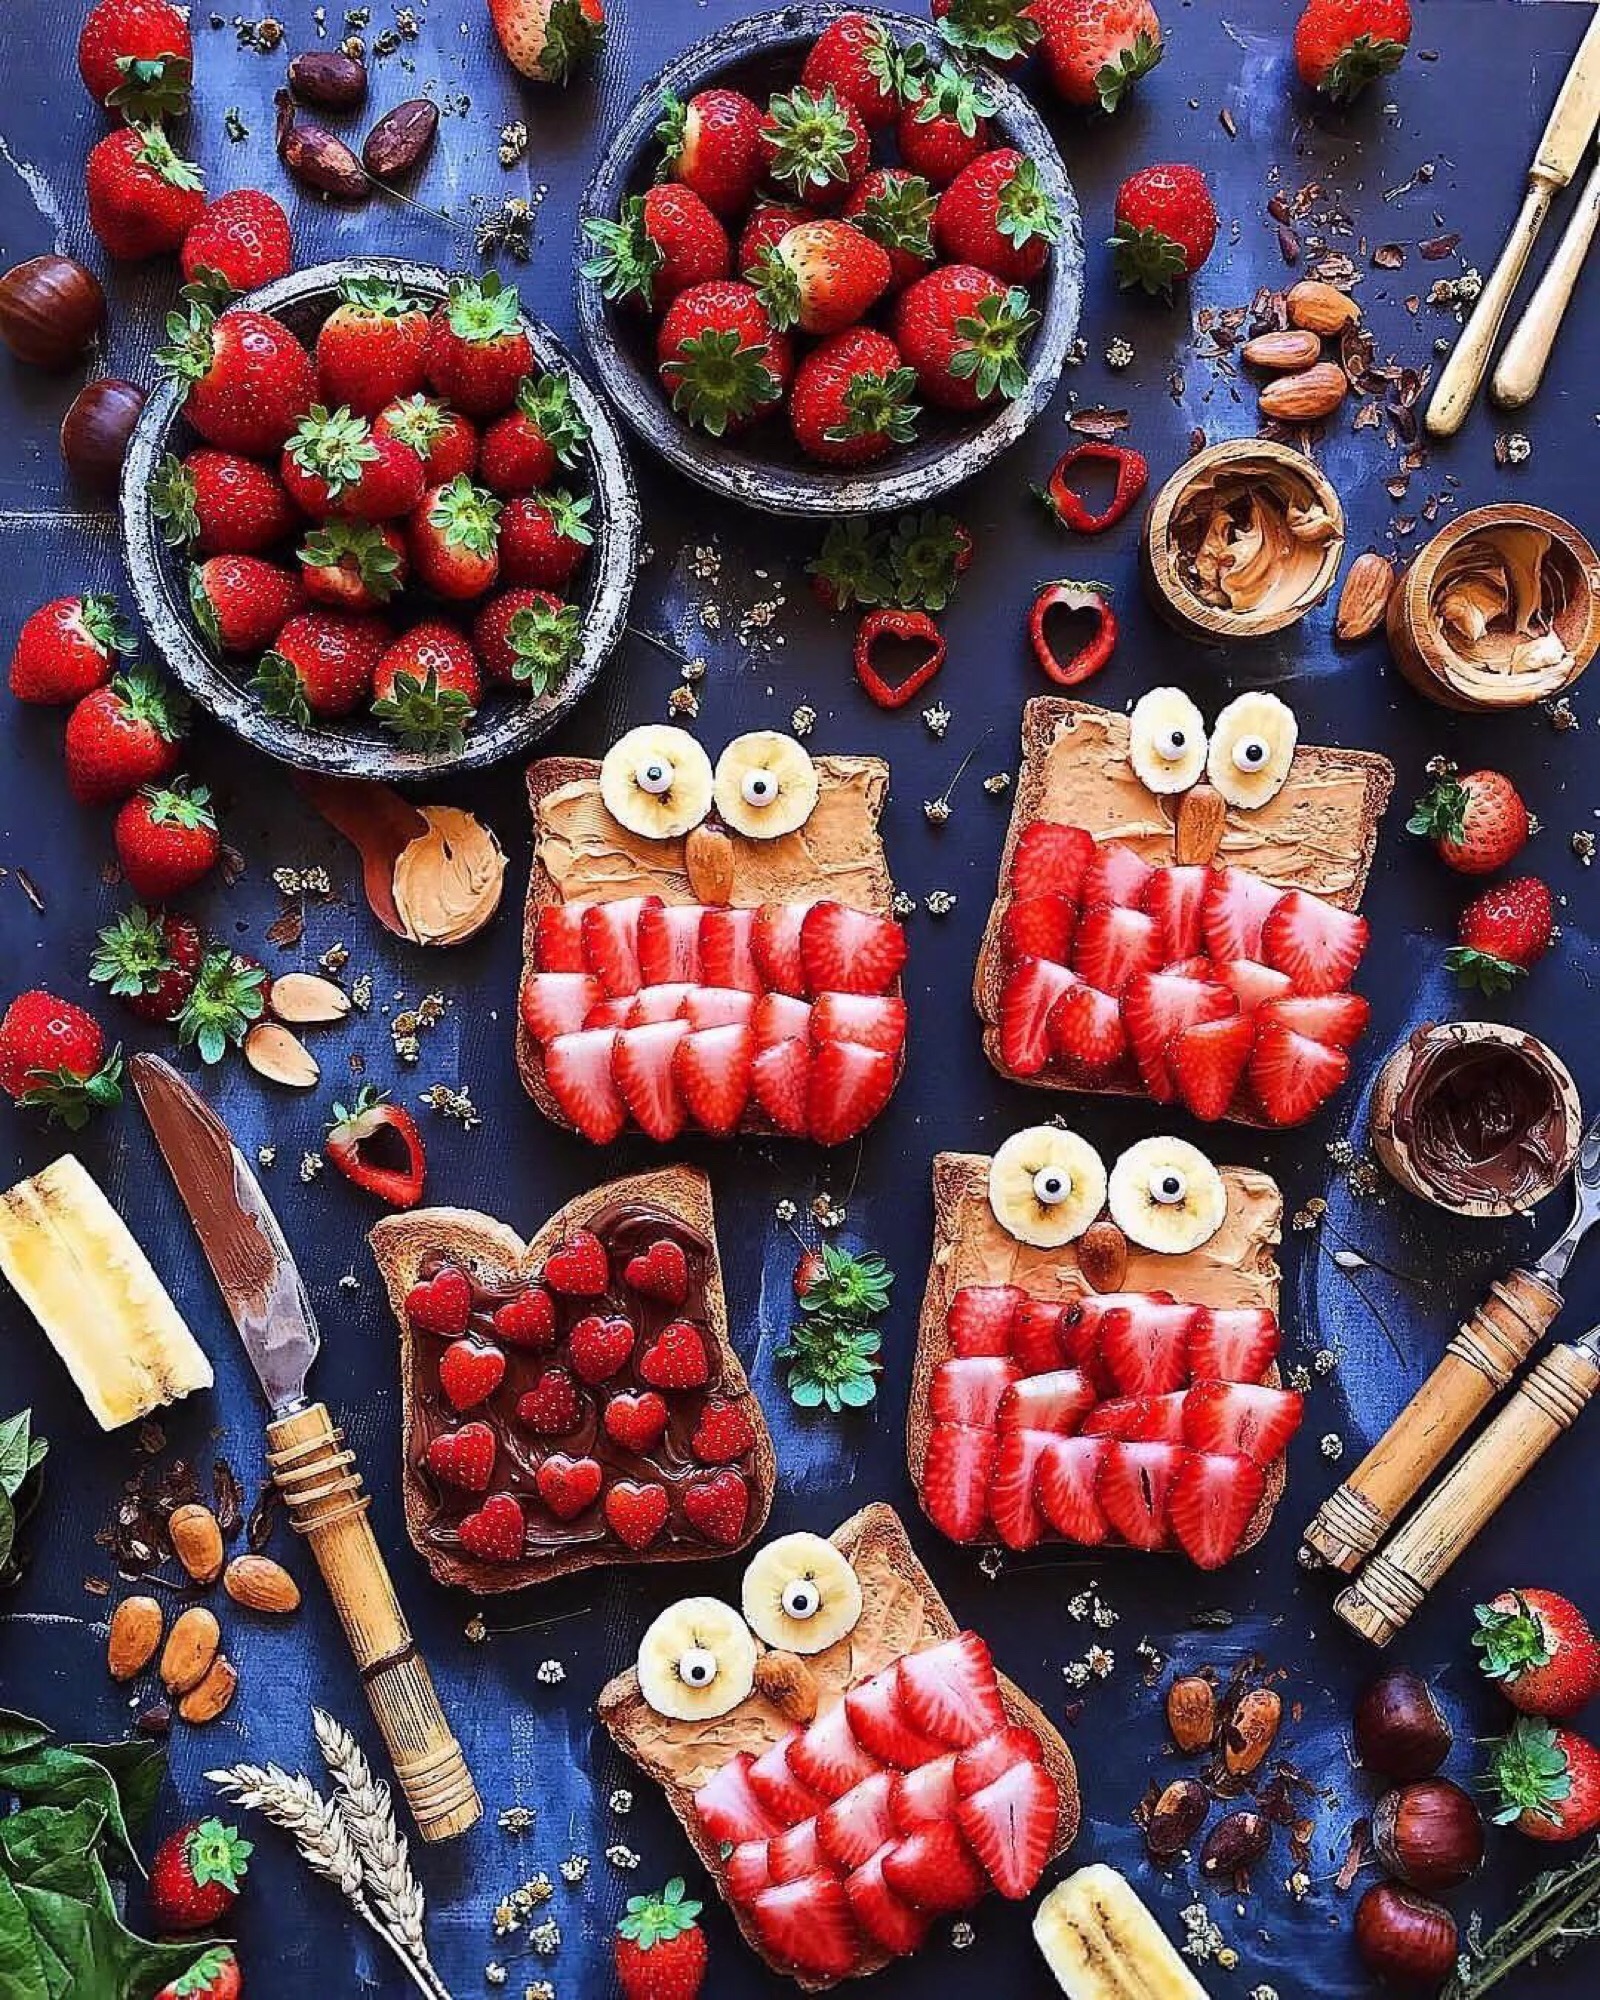 草莓甜点,吃完秒变甜心小公举!